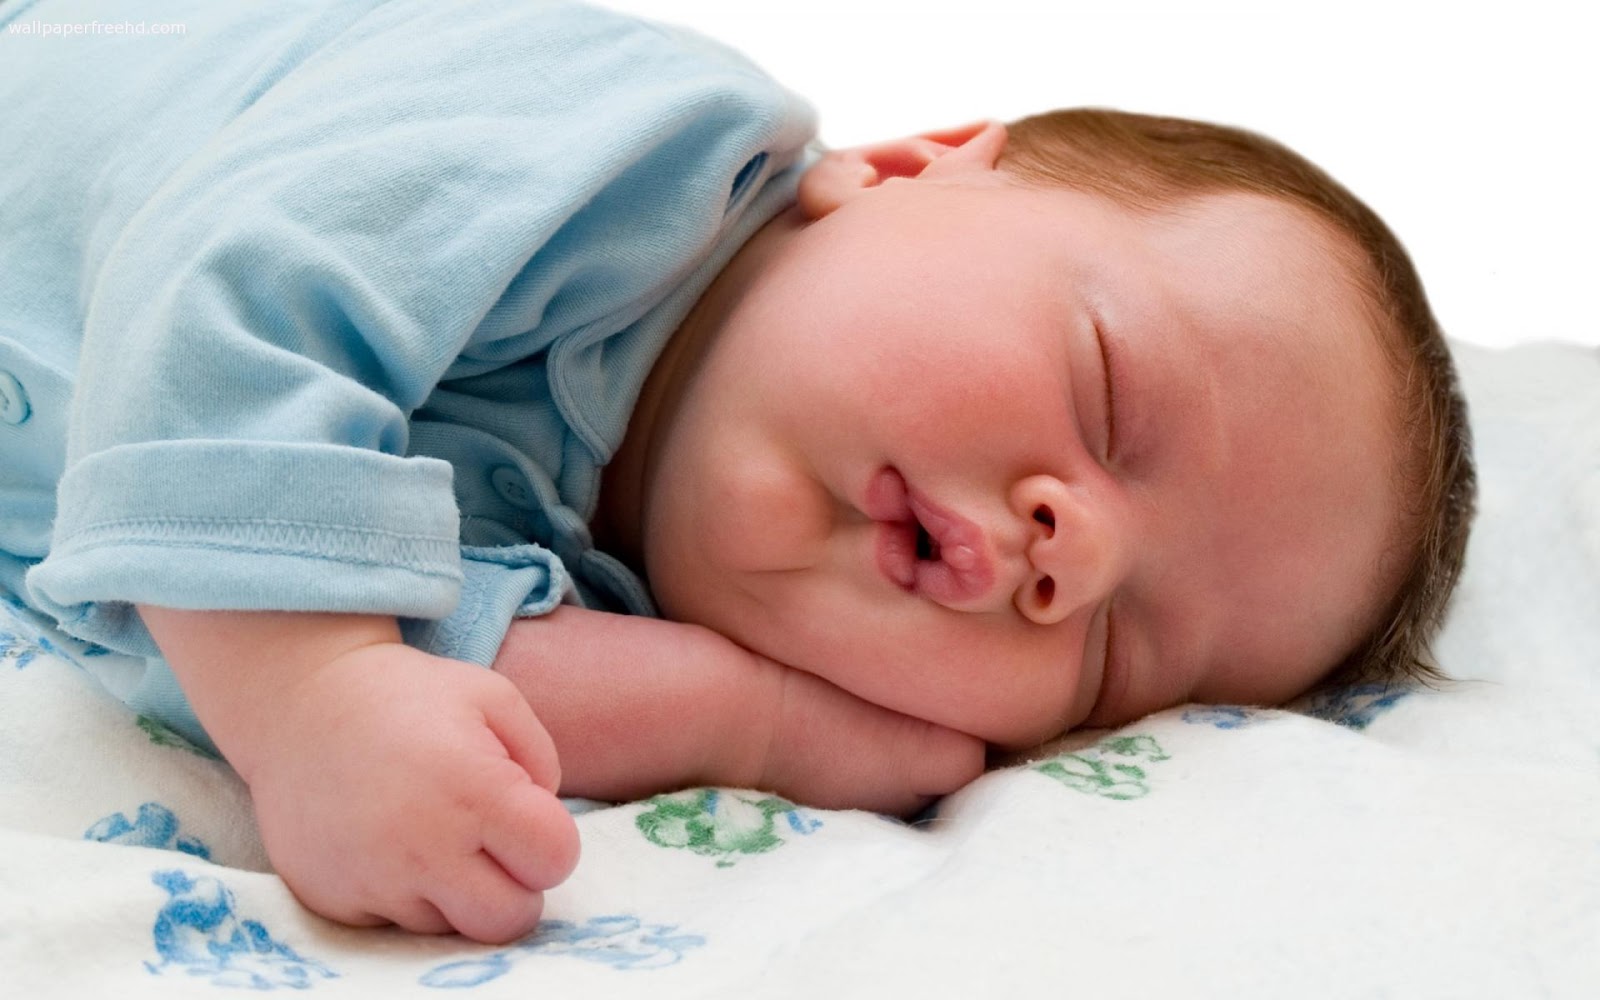 bebé durmiendo,niño,bebé,dormir,niñito,siesta